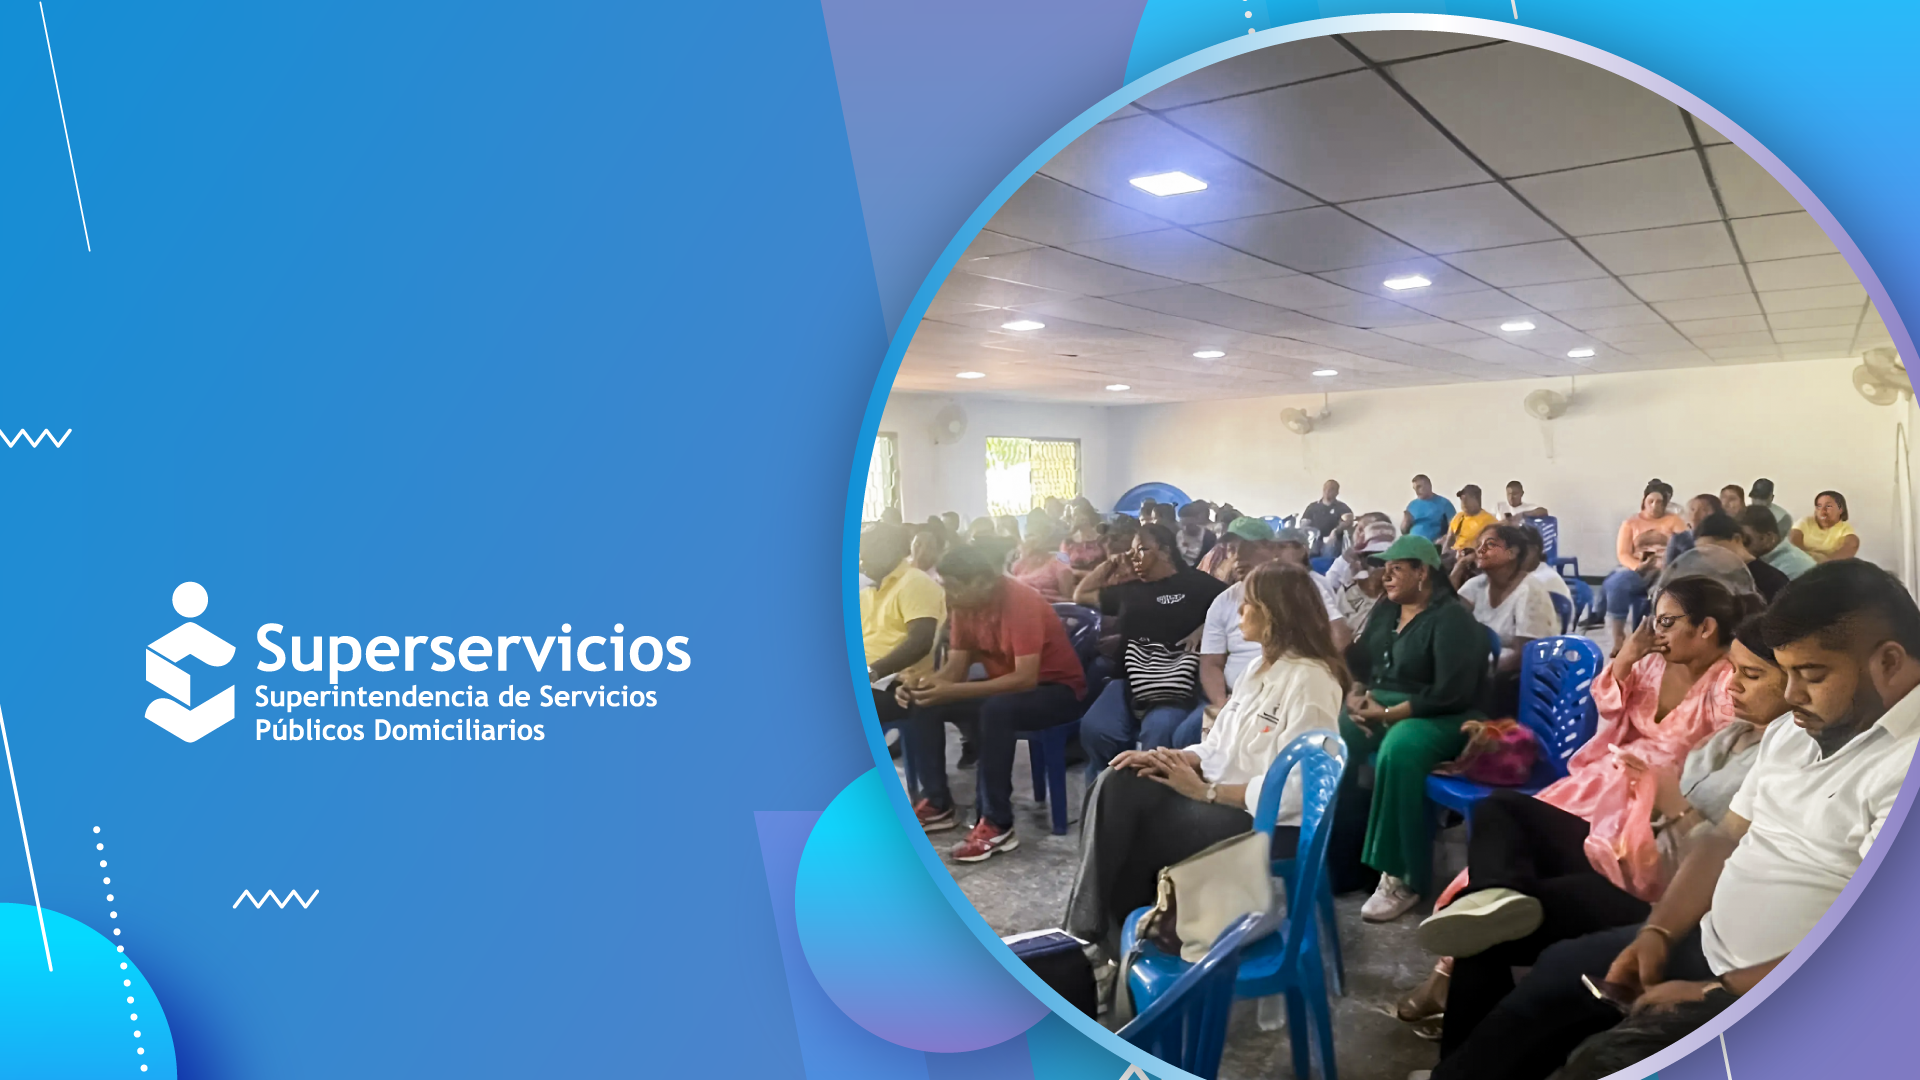 La Superservicios participó en la construcción de acuerdos entre la comunidad y prestadores logrando el 4restablecimiento del servicio de agua y la reapertura de las oficinas de Air-e